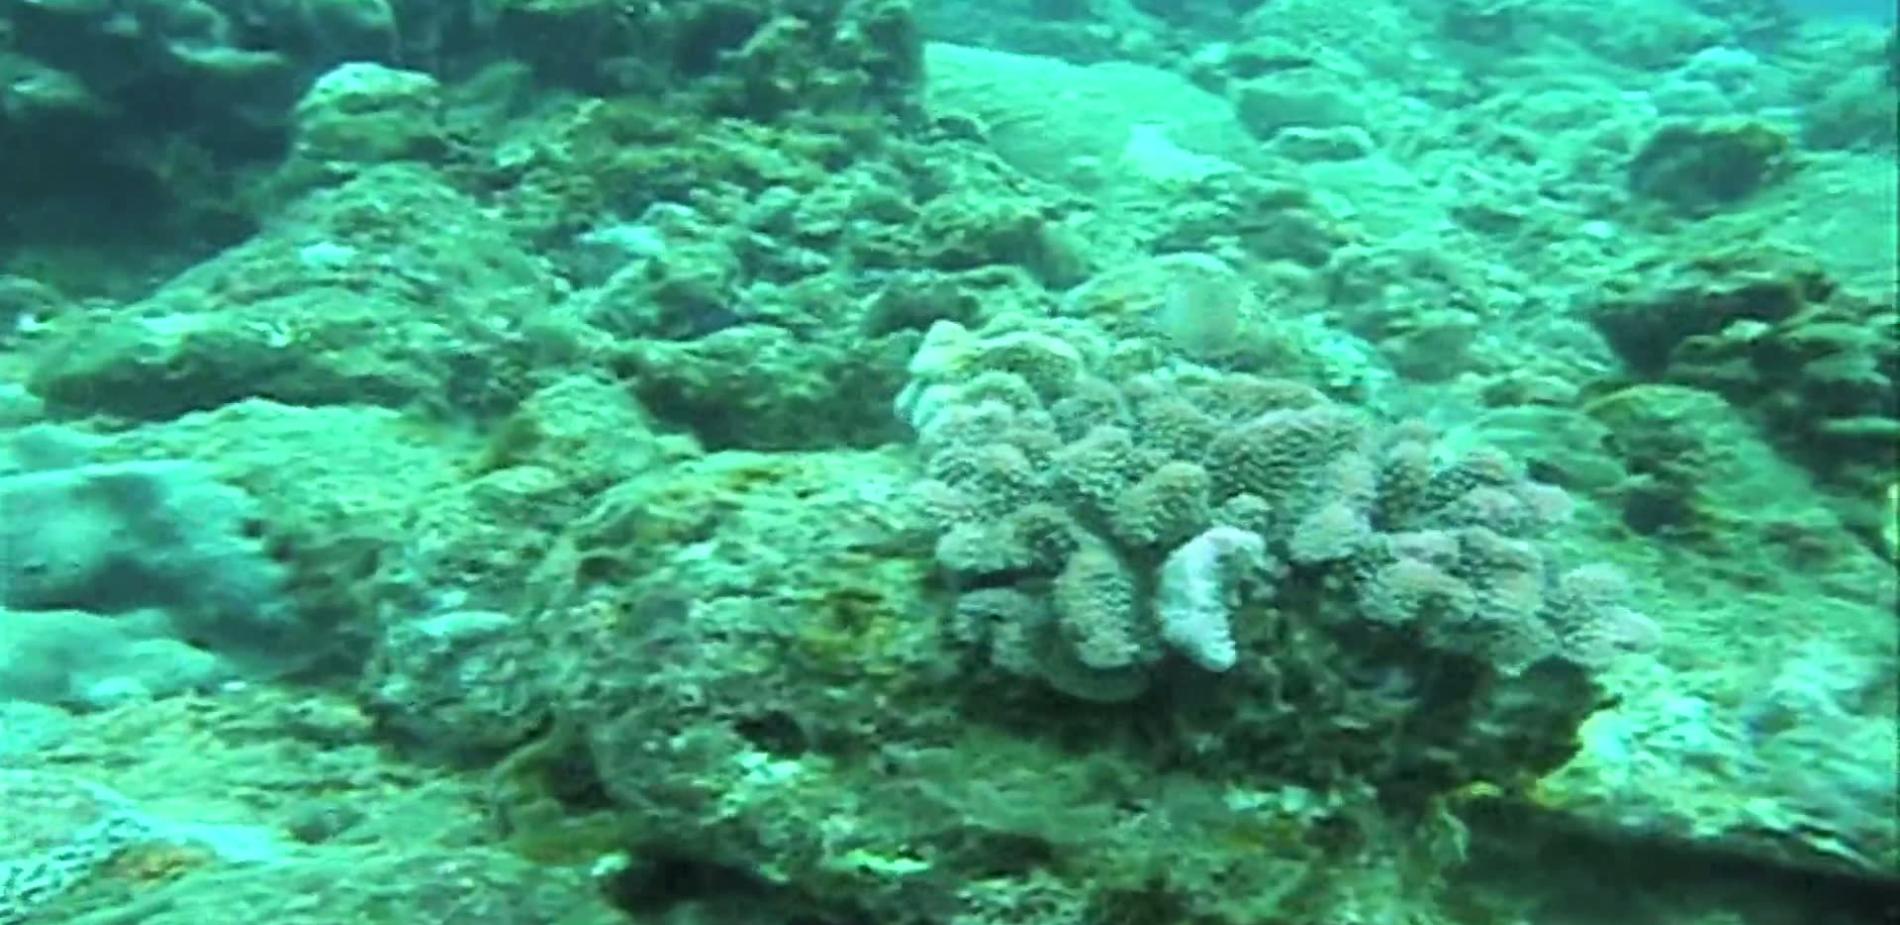 Sauvetage de coraux à l'île Maurice